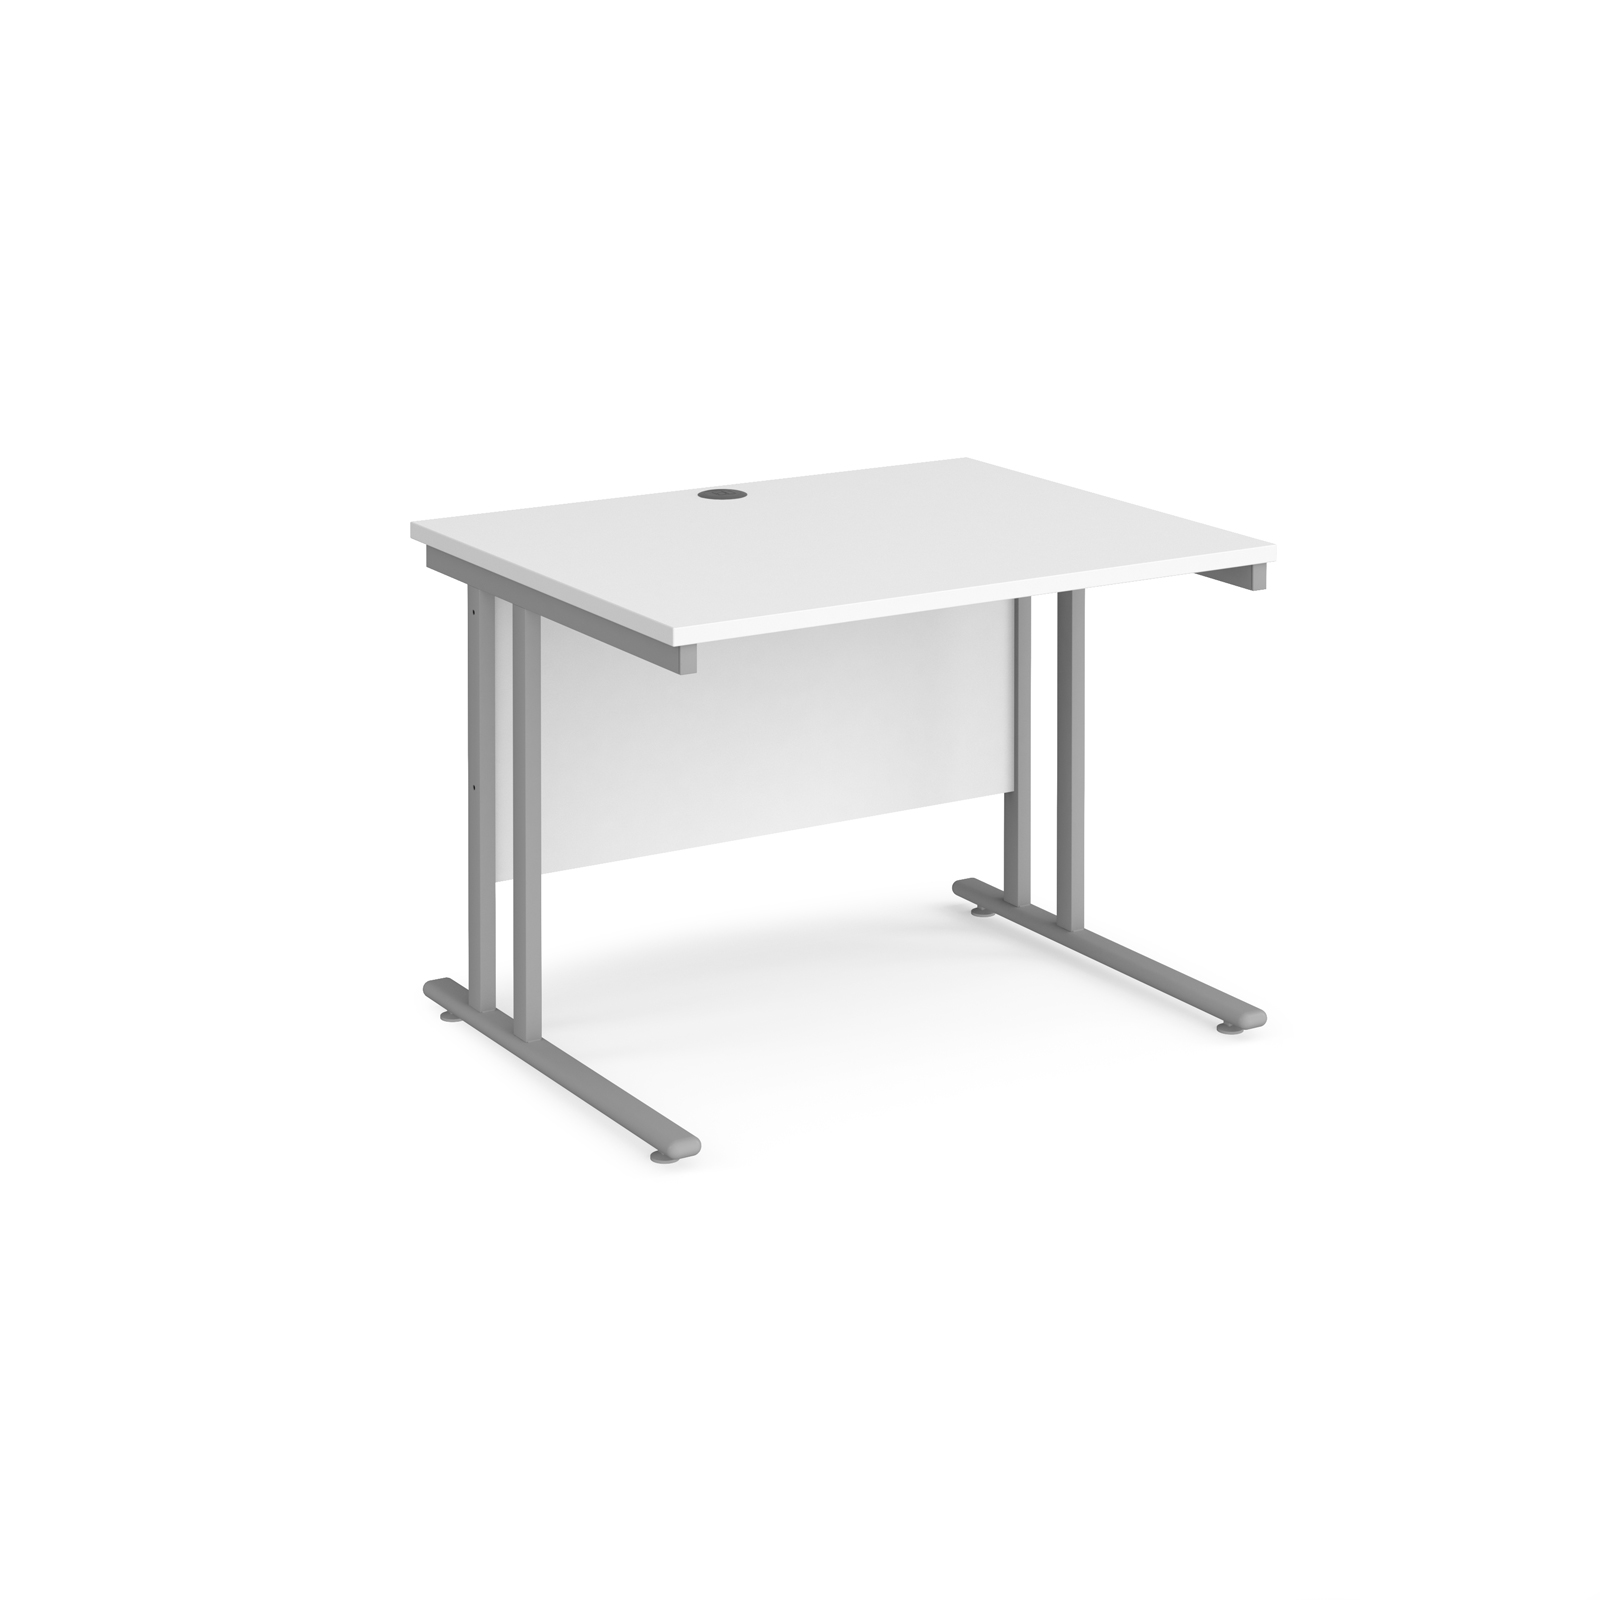 Rectangular Desks Maestro 25 straight desk 1000mm x 800mm - silver cantilever leg frame, white top